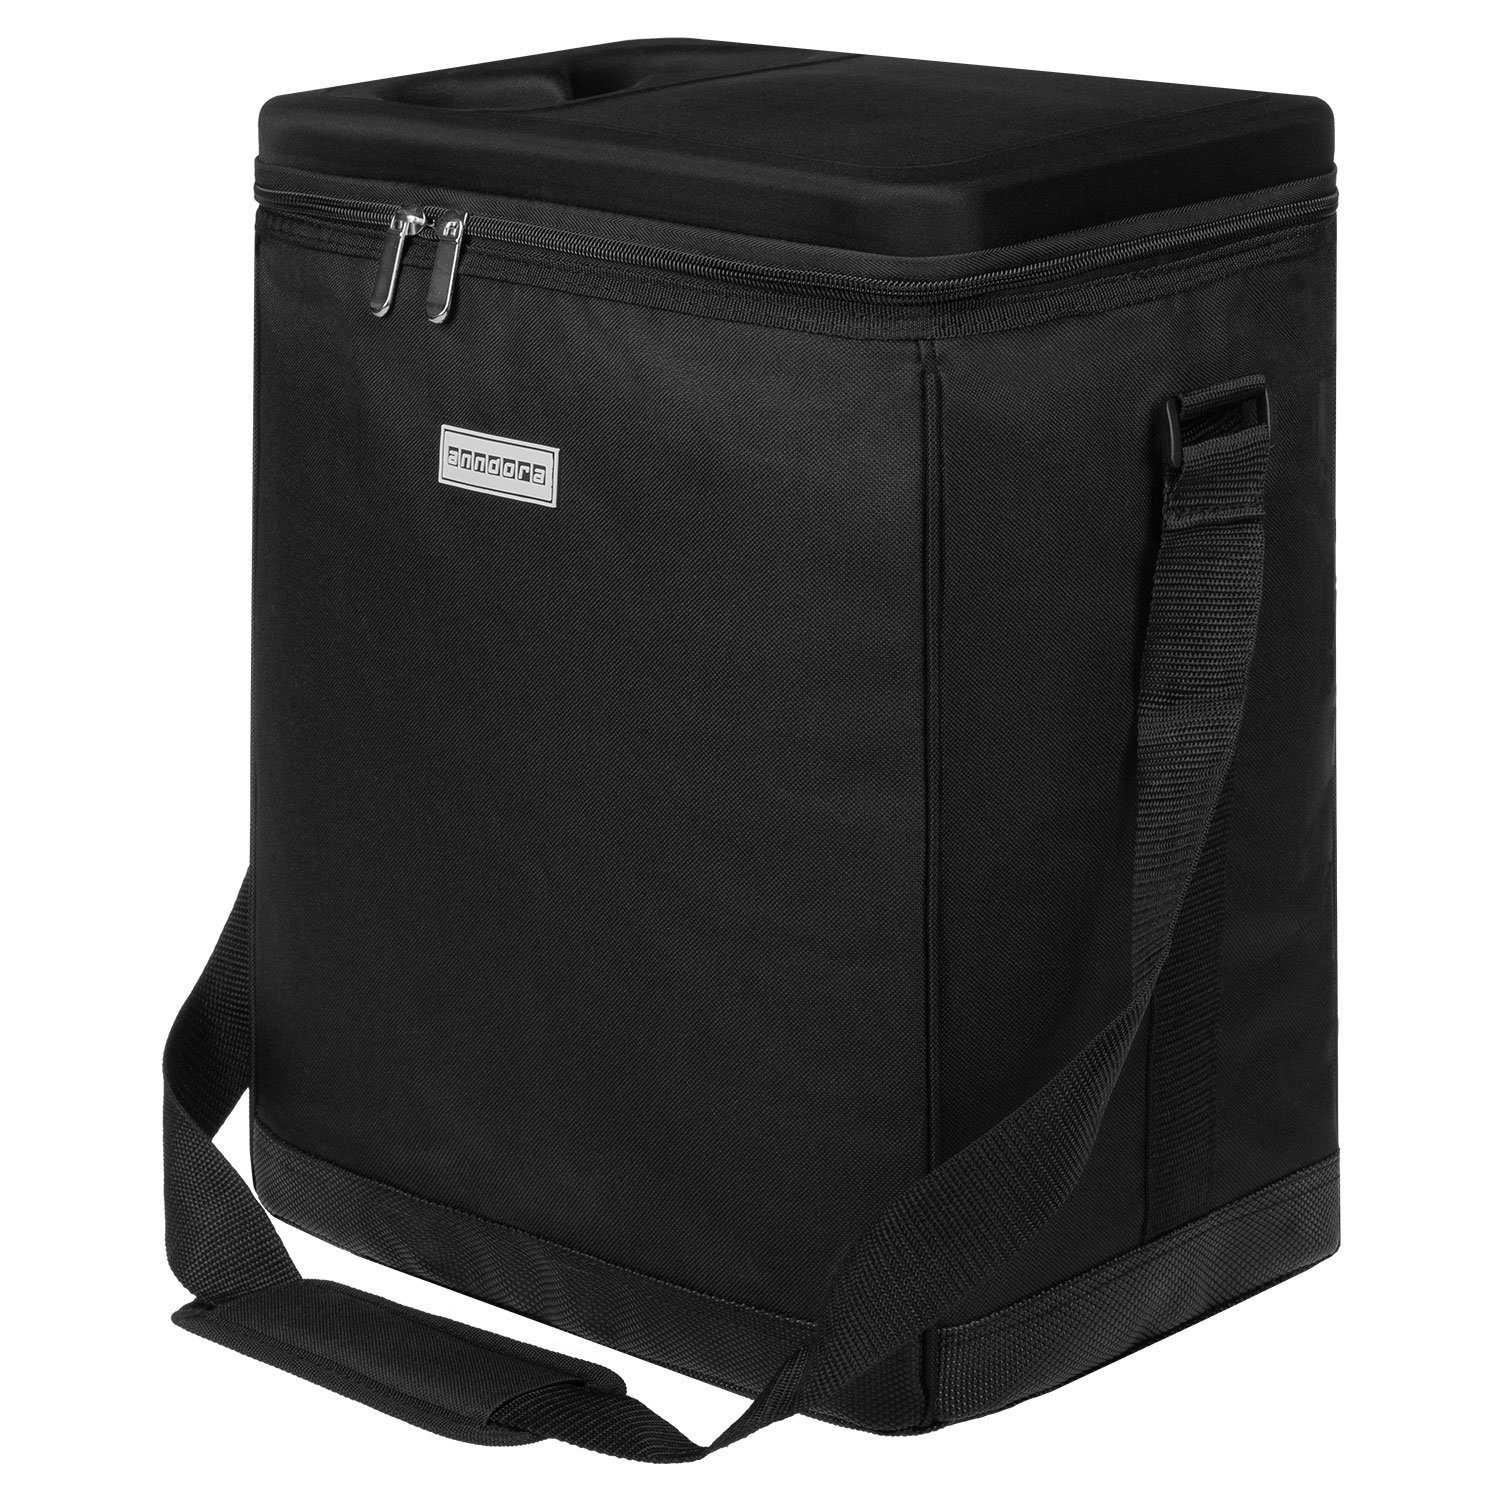 anndora Kühlbox Kühltasche 32L - Kühleinsatz - reisenthel carrycruiser kompatibel schwarz